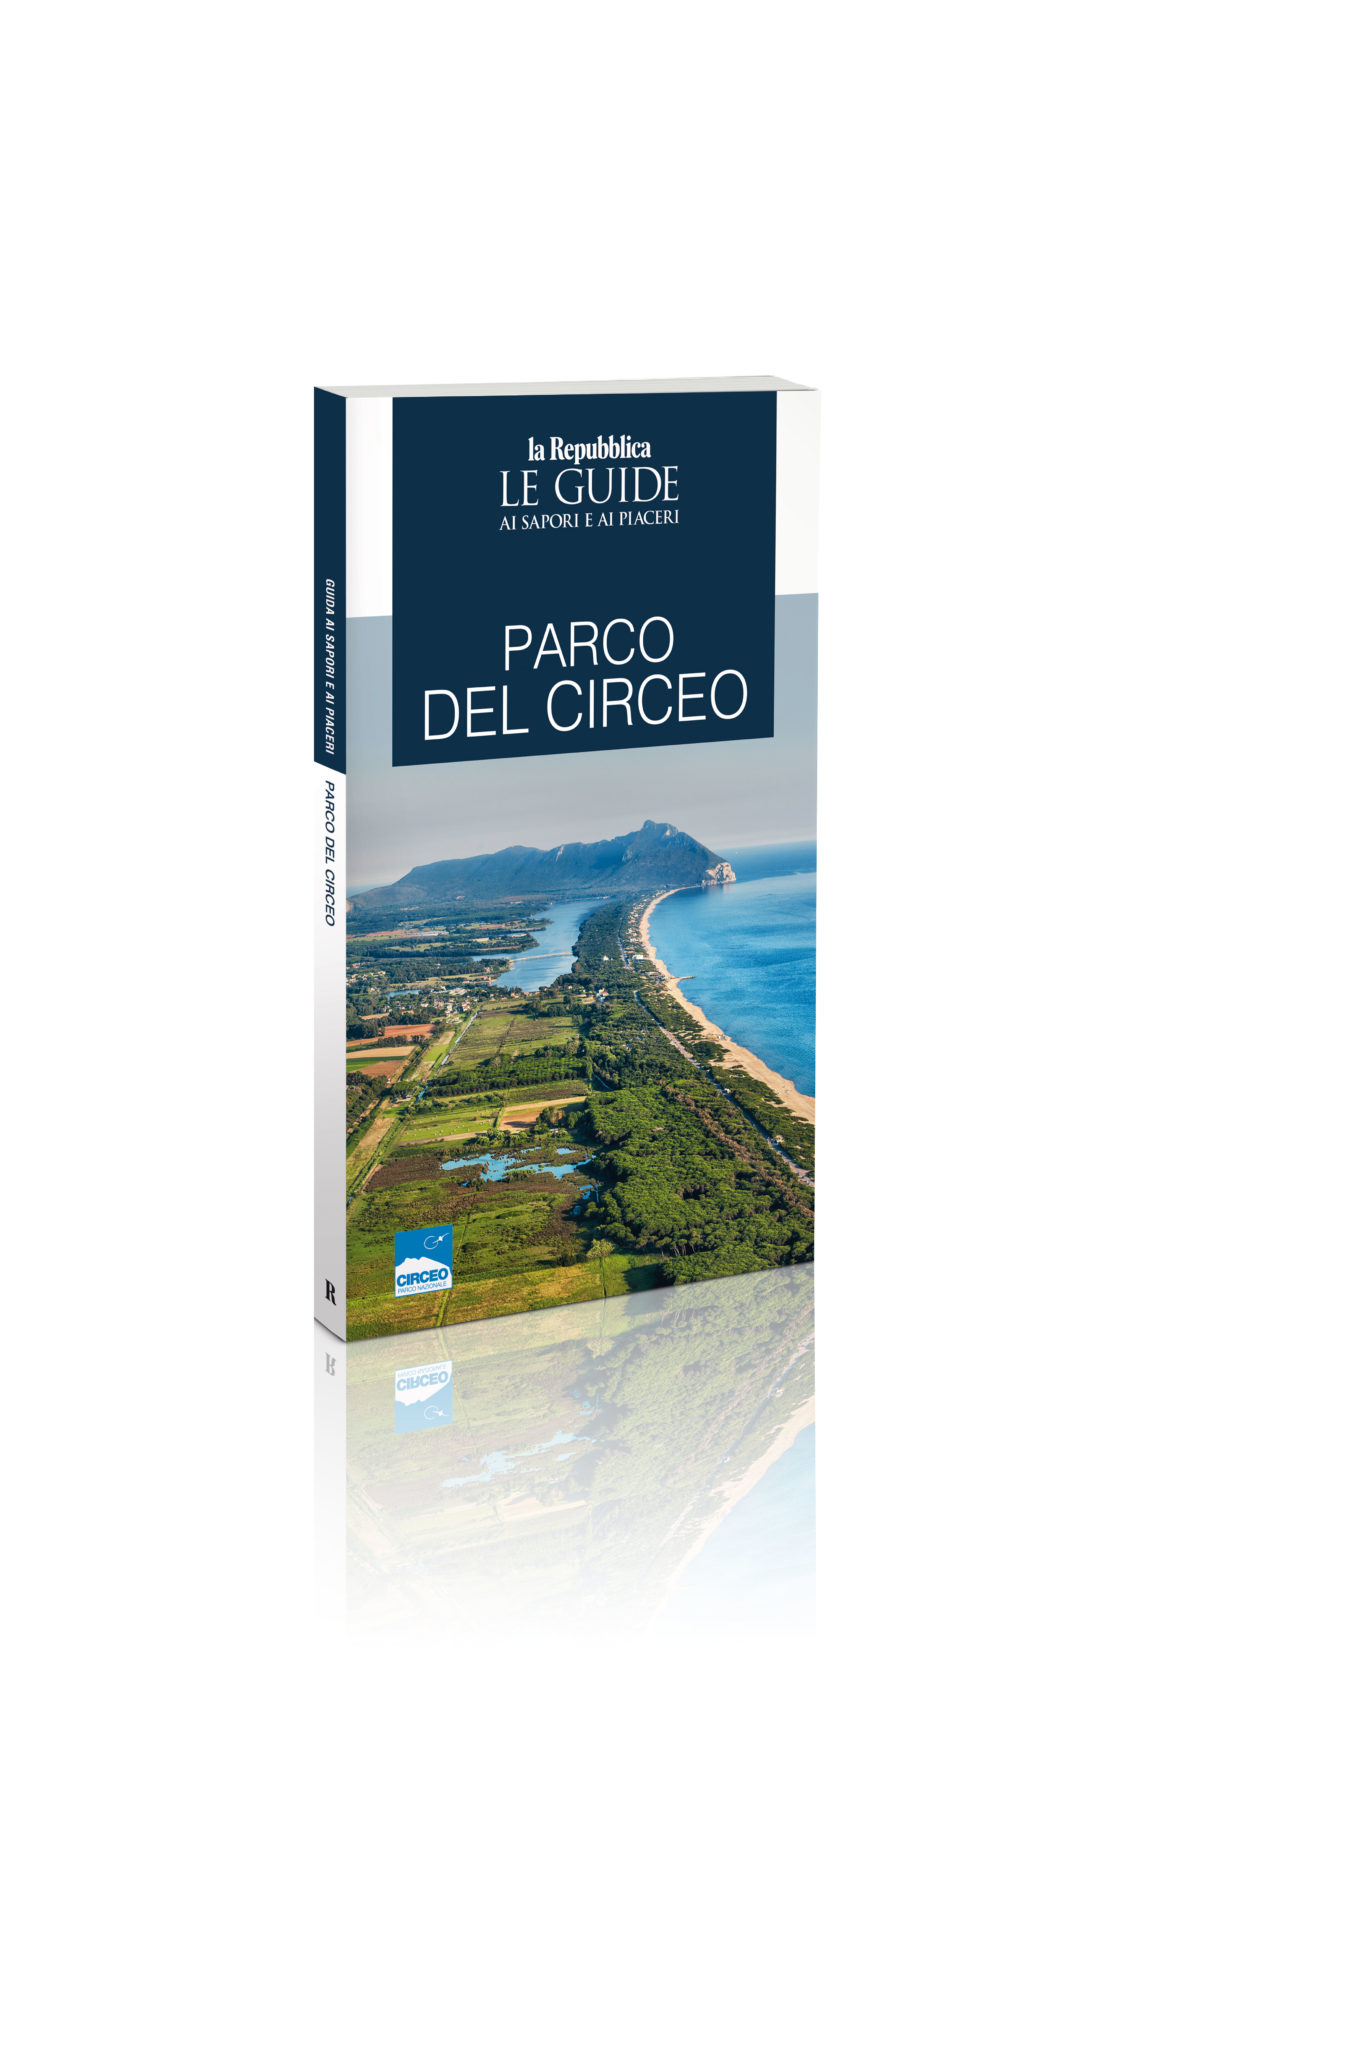 Con La Repubblica la nuova Guida del Parco Nazionale del Circeo 